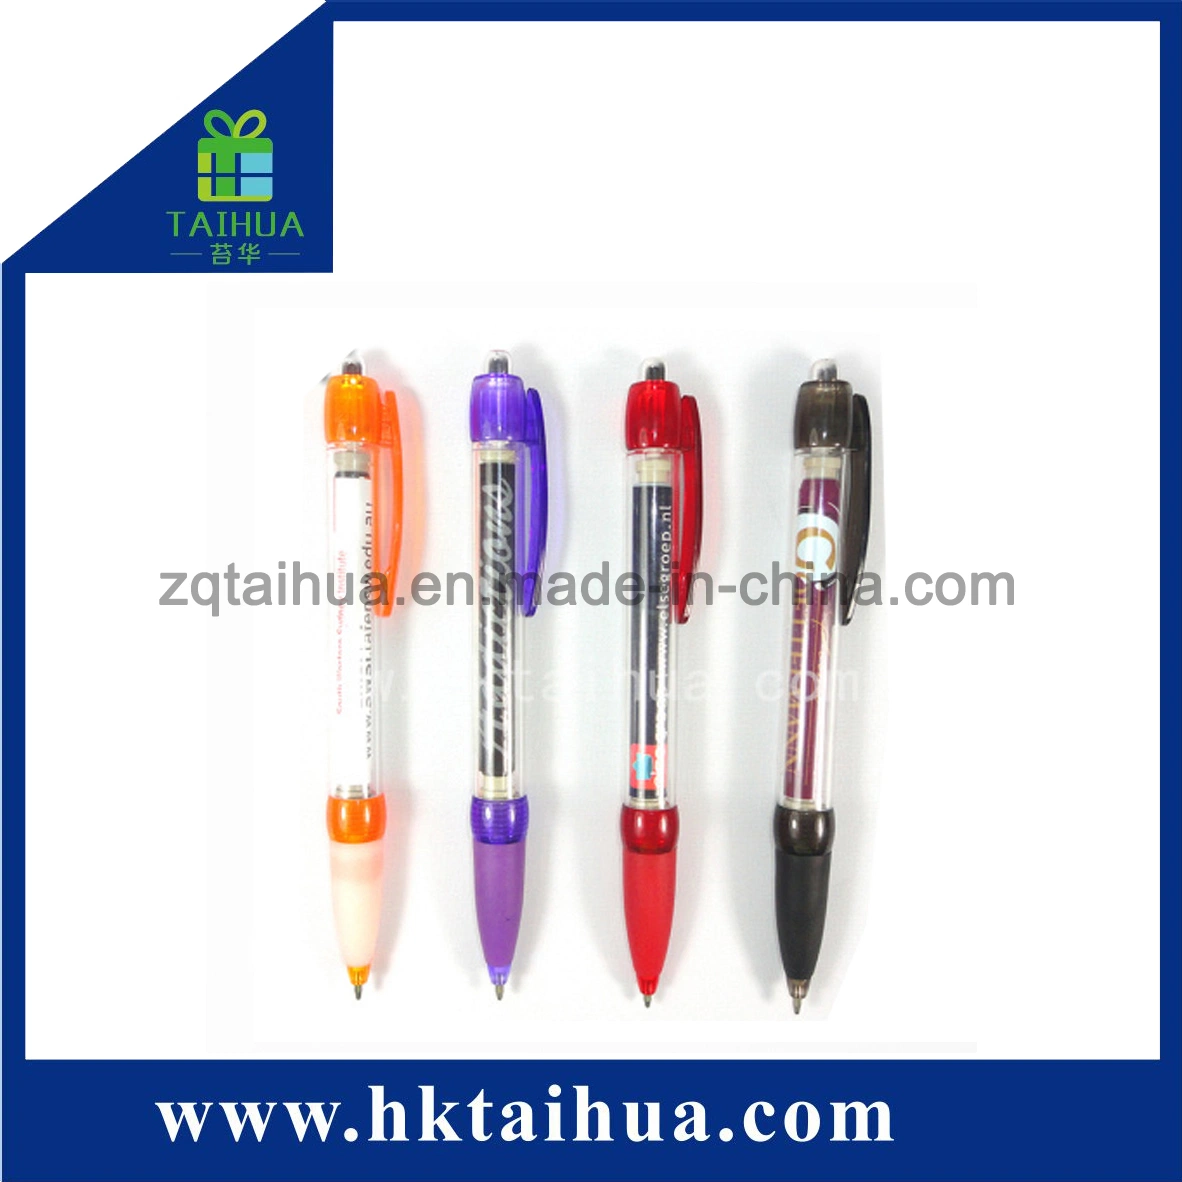 2019 Promotional Pen, Plastic Promotion Pen, Ball Pen (TH-08025)